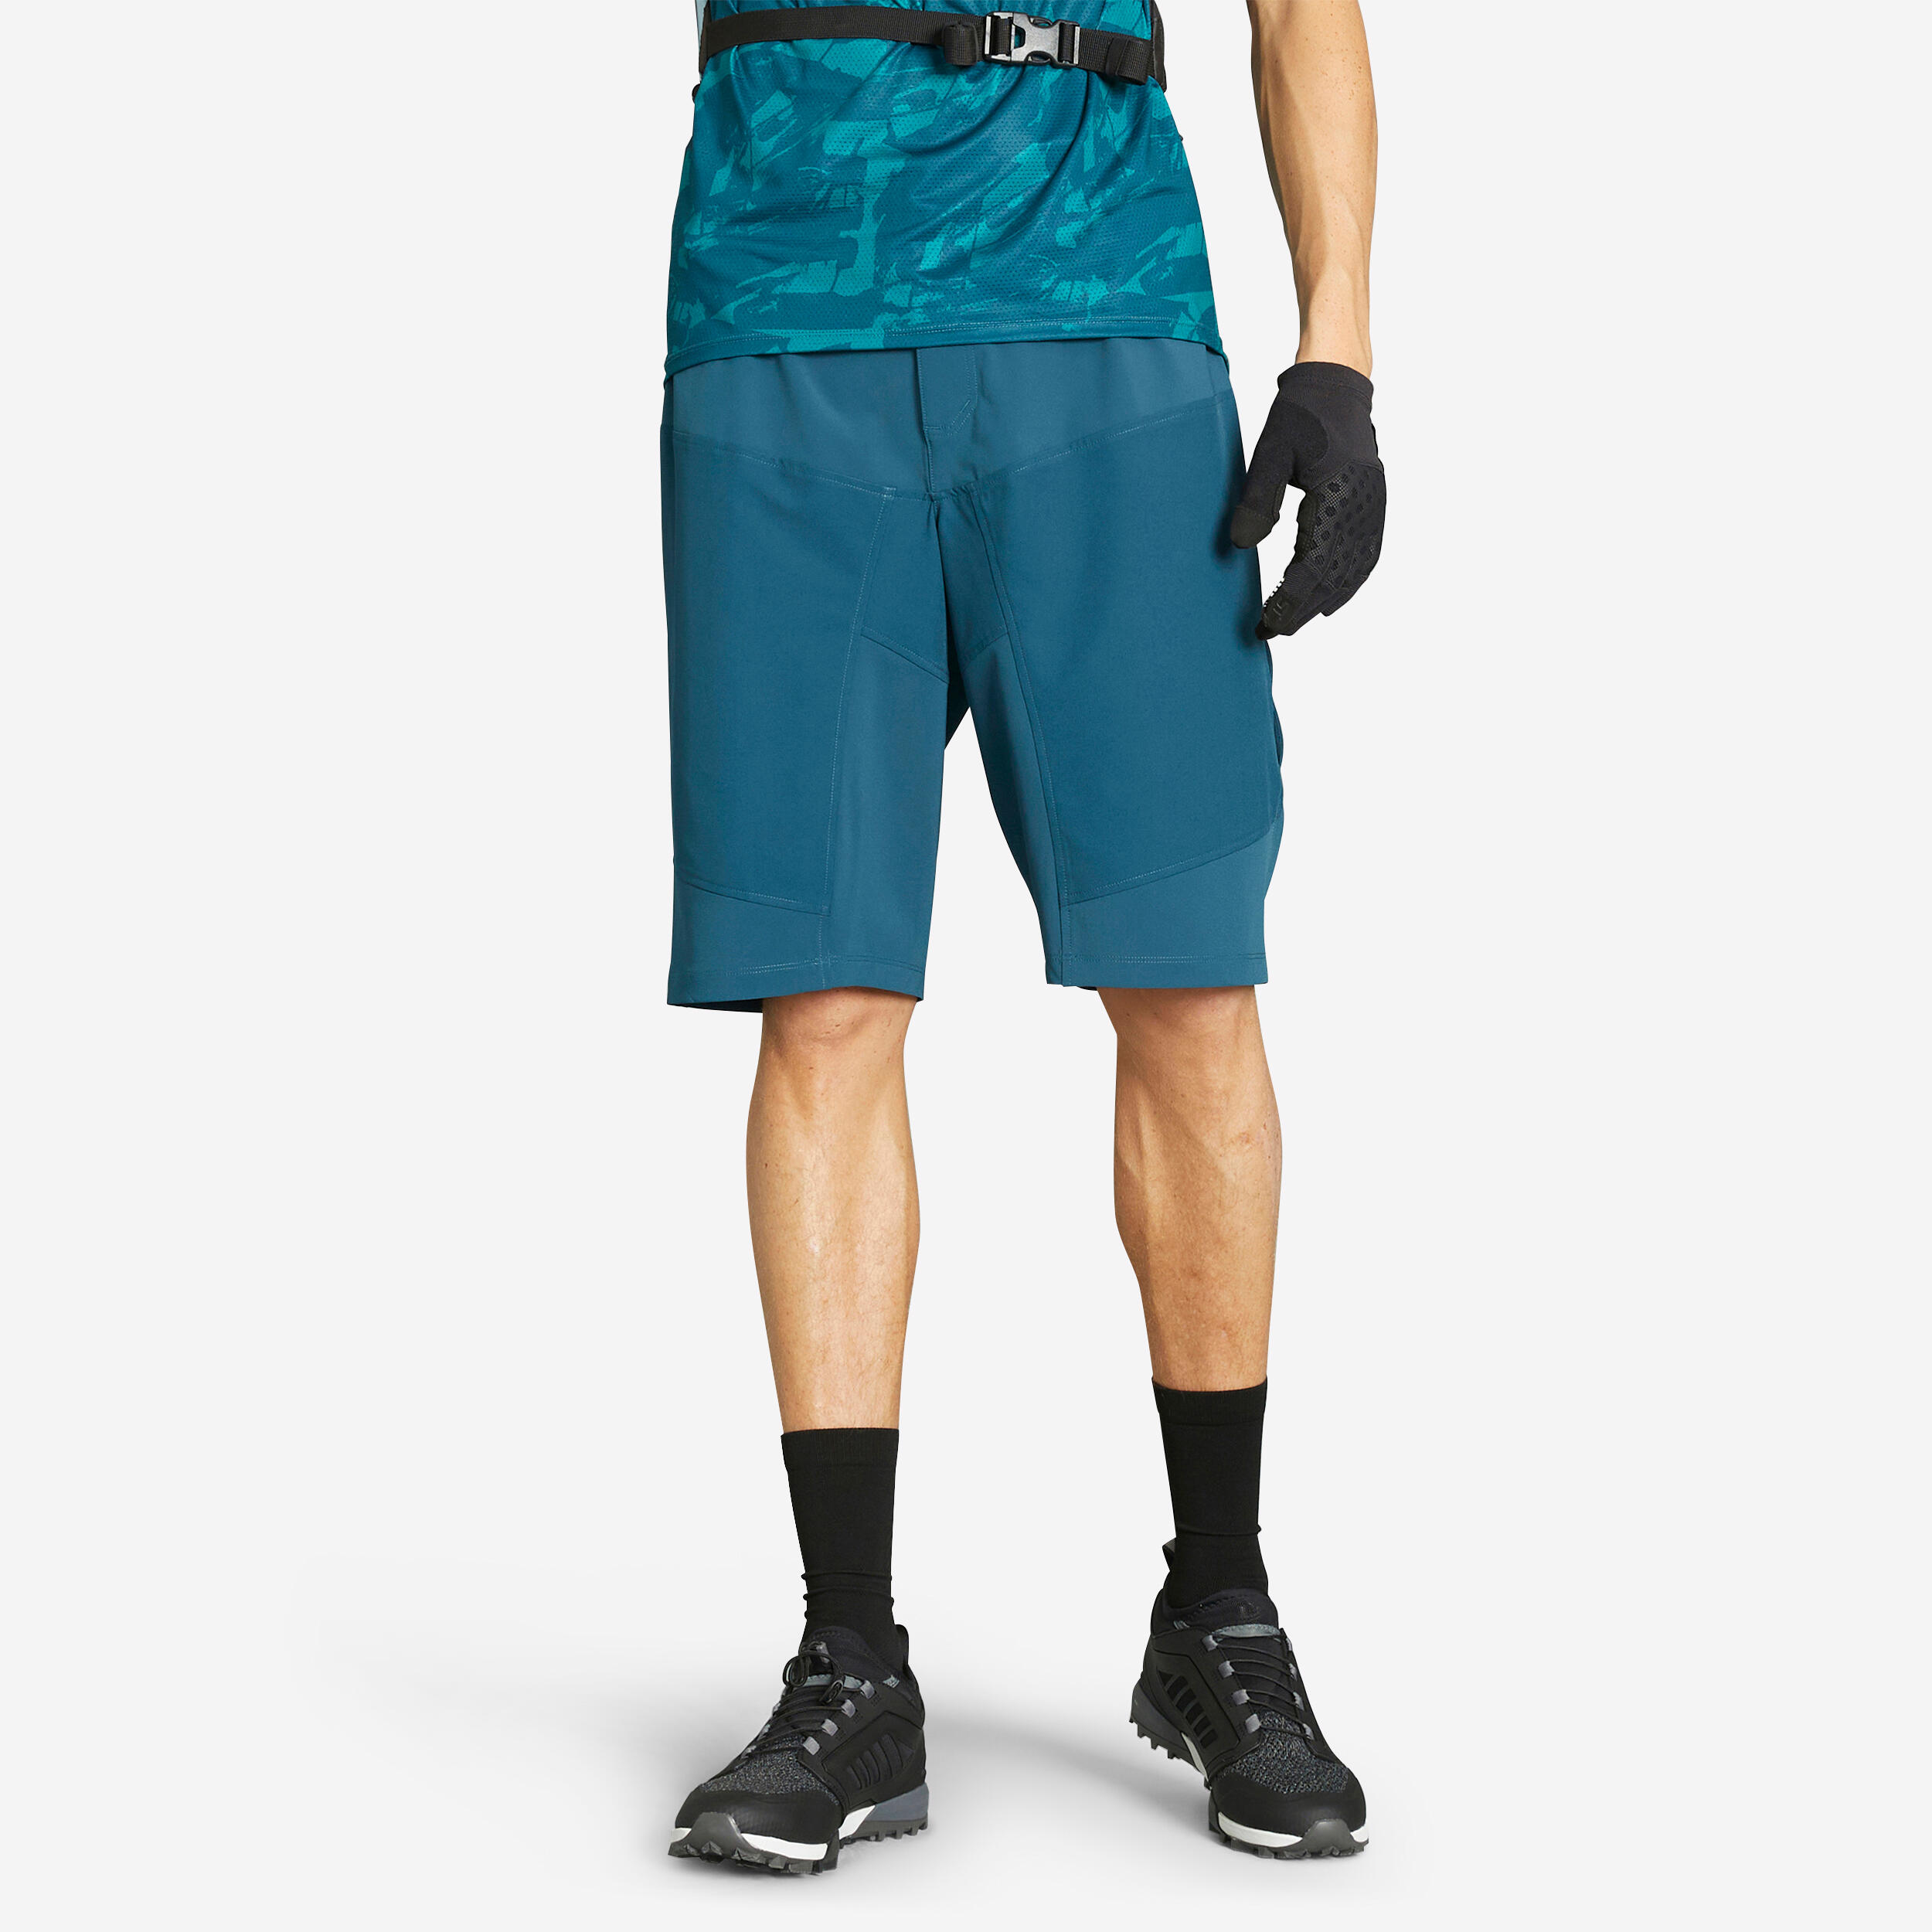 ROCKRIDER Men's MTB Shorts EXPL 500 - Blue/Green